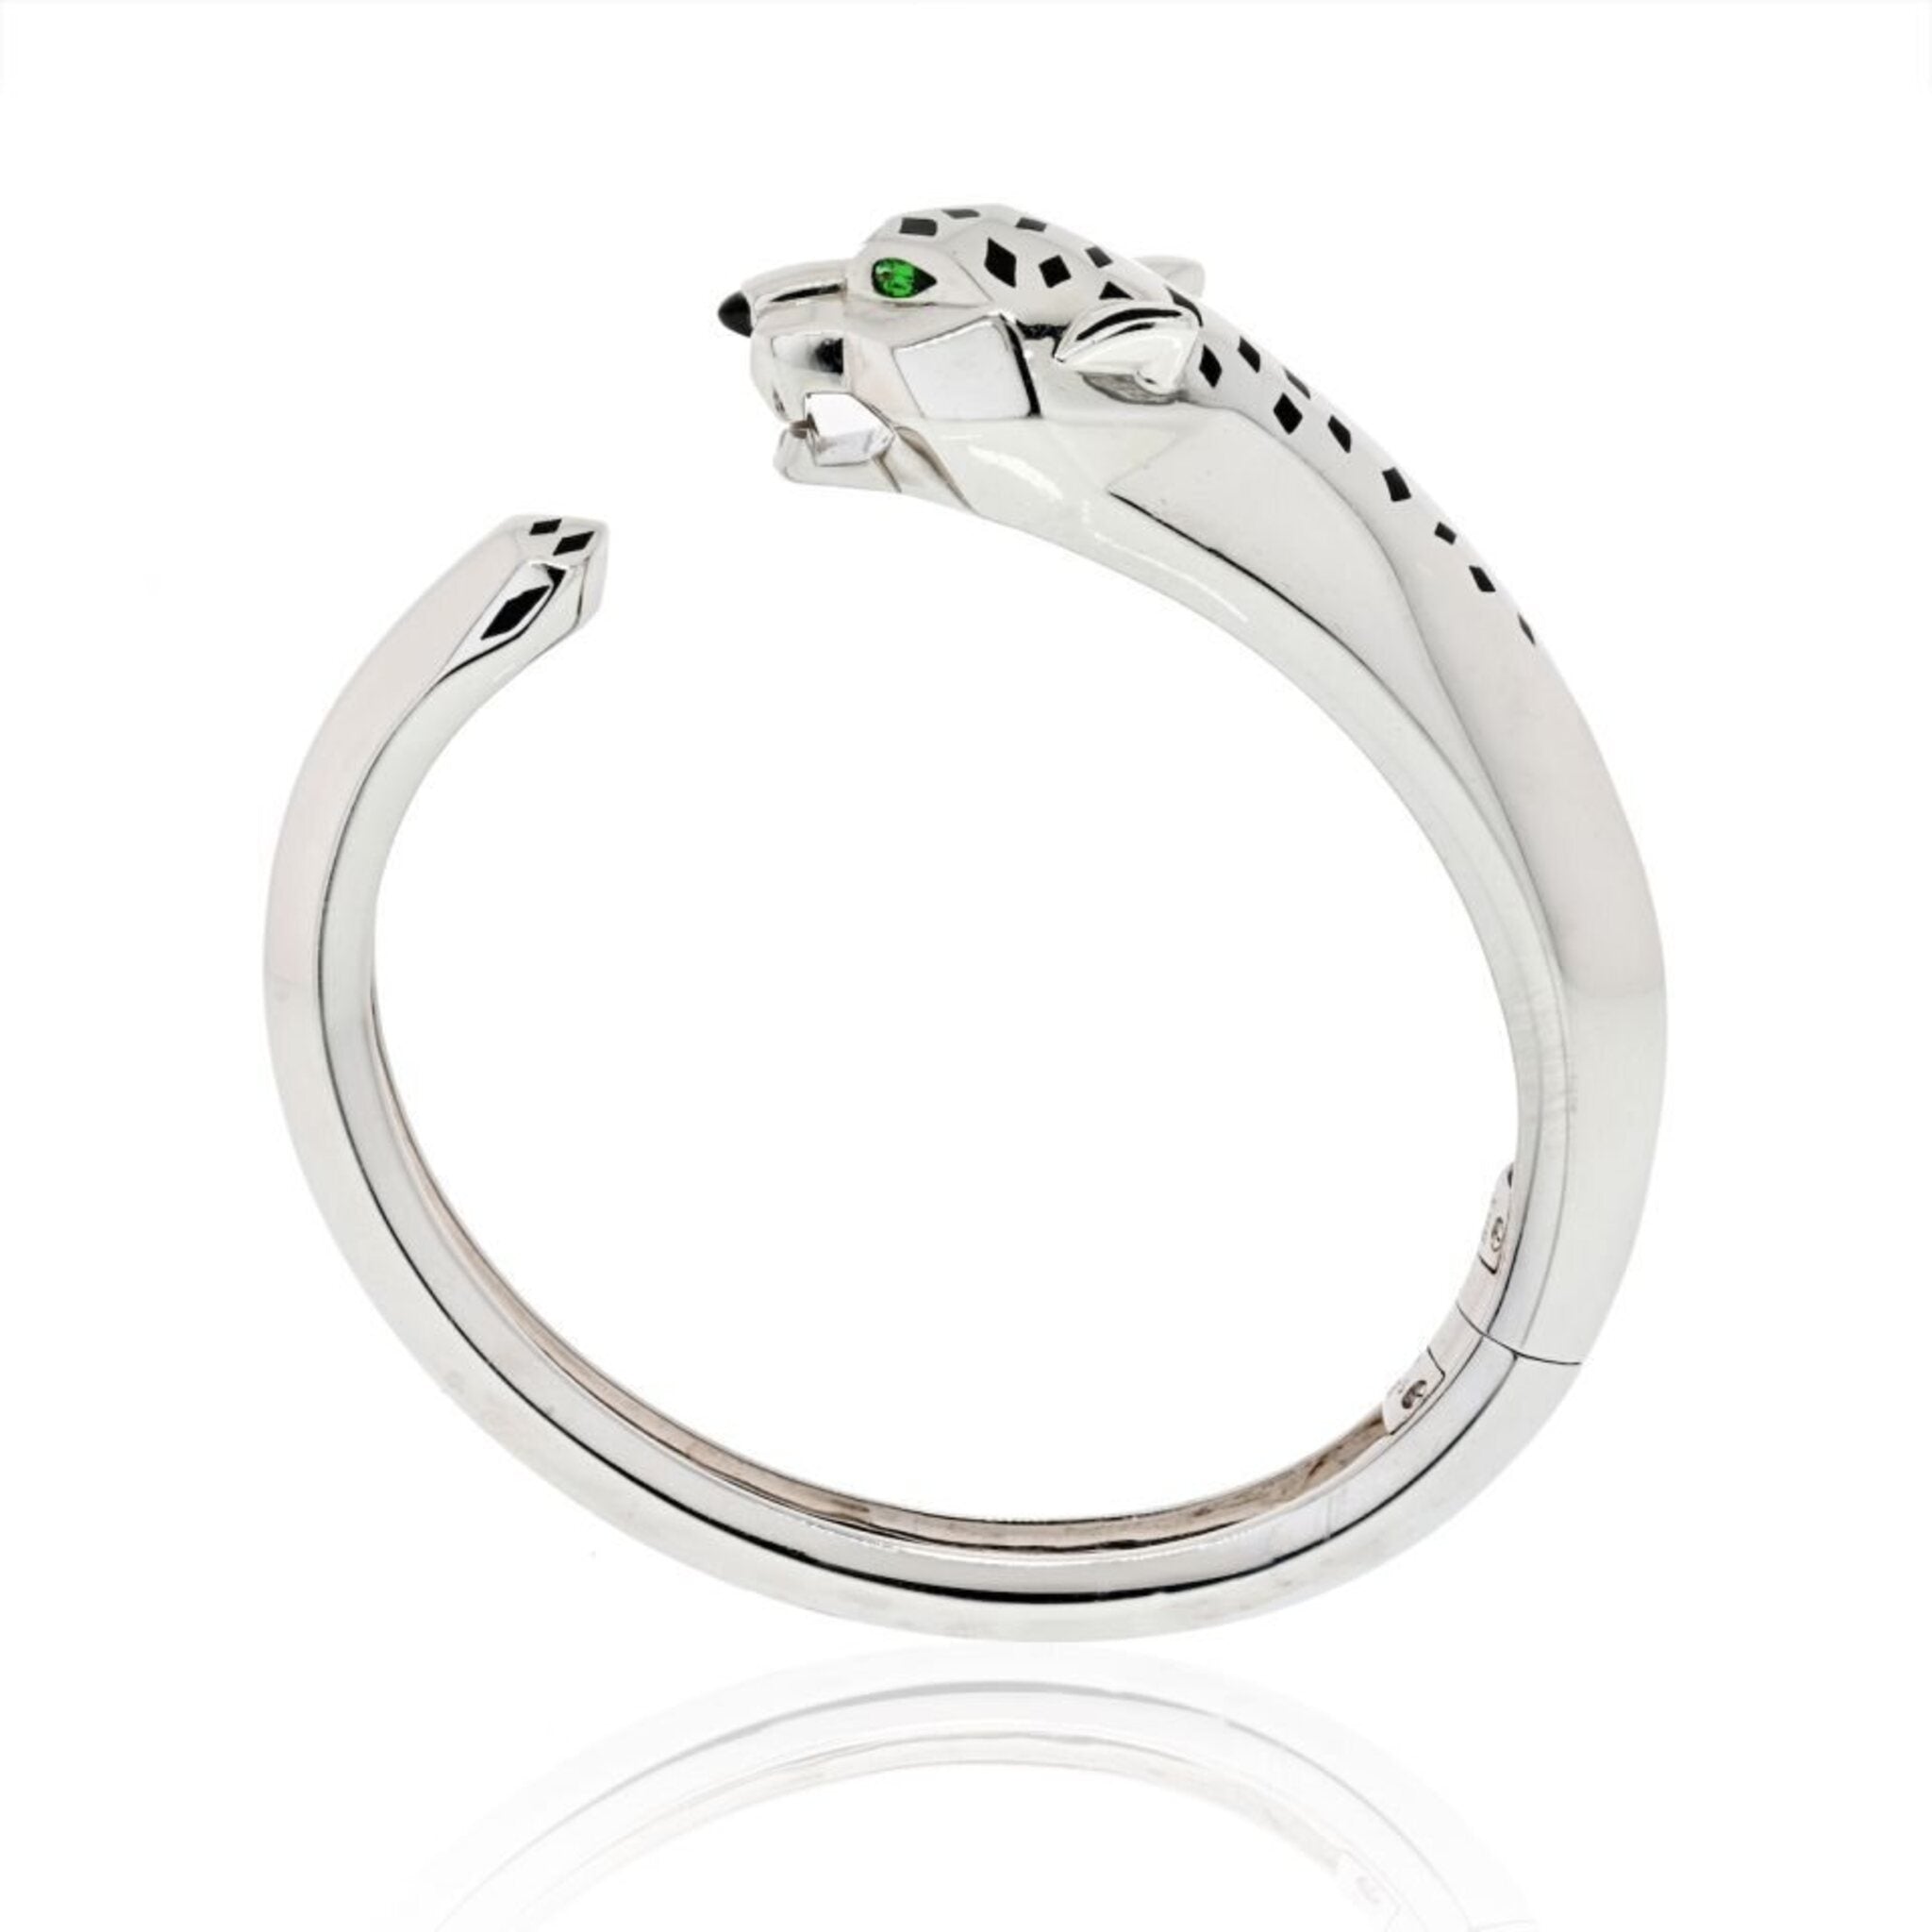 CRN6721017 - Panthère de Cartier bracelet - White gold, emeralds, onyx,  diamonds - Cartier